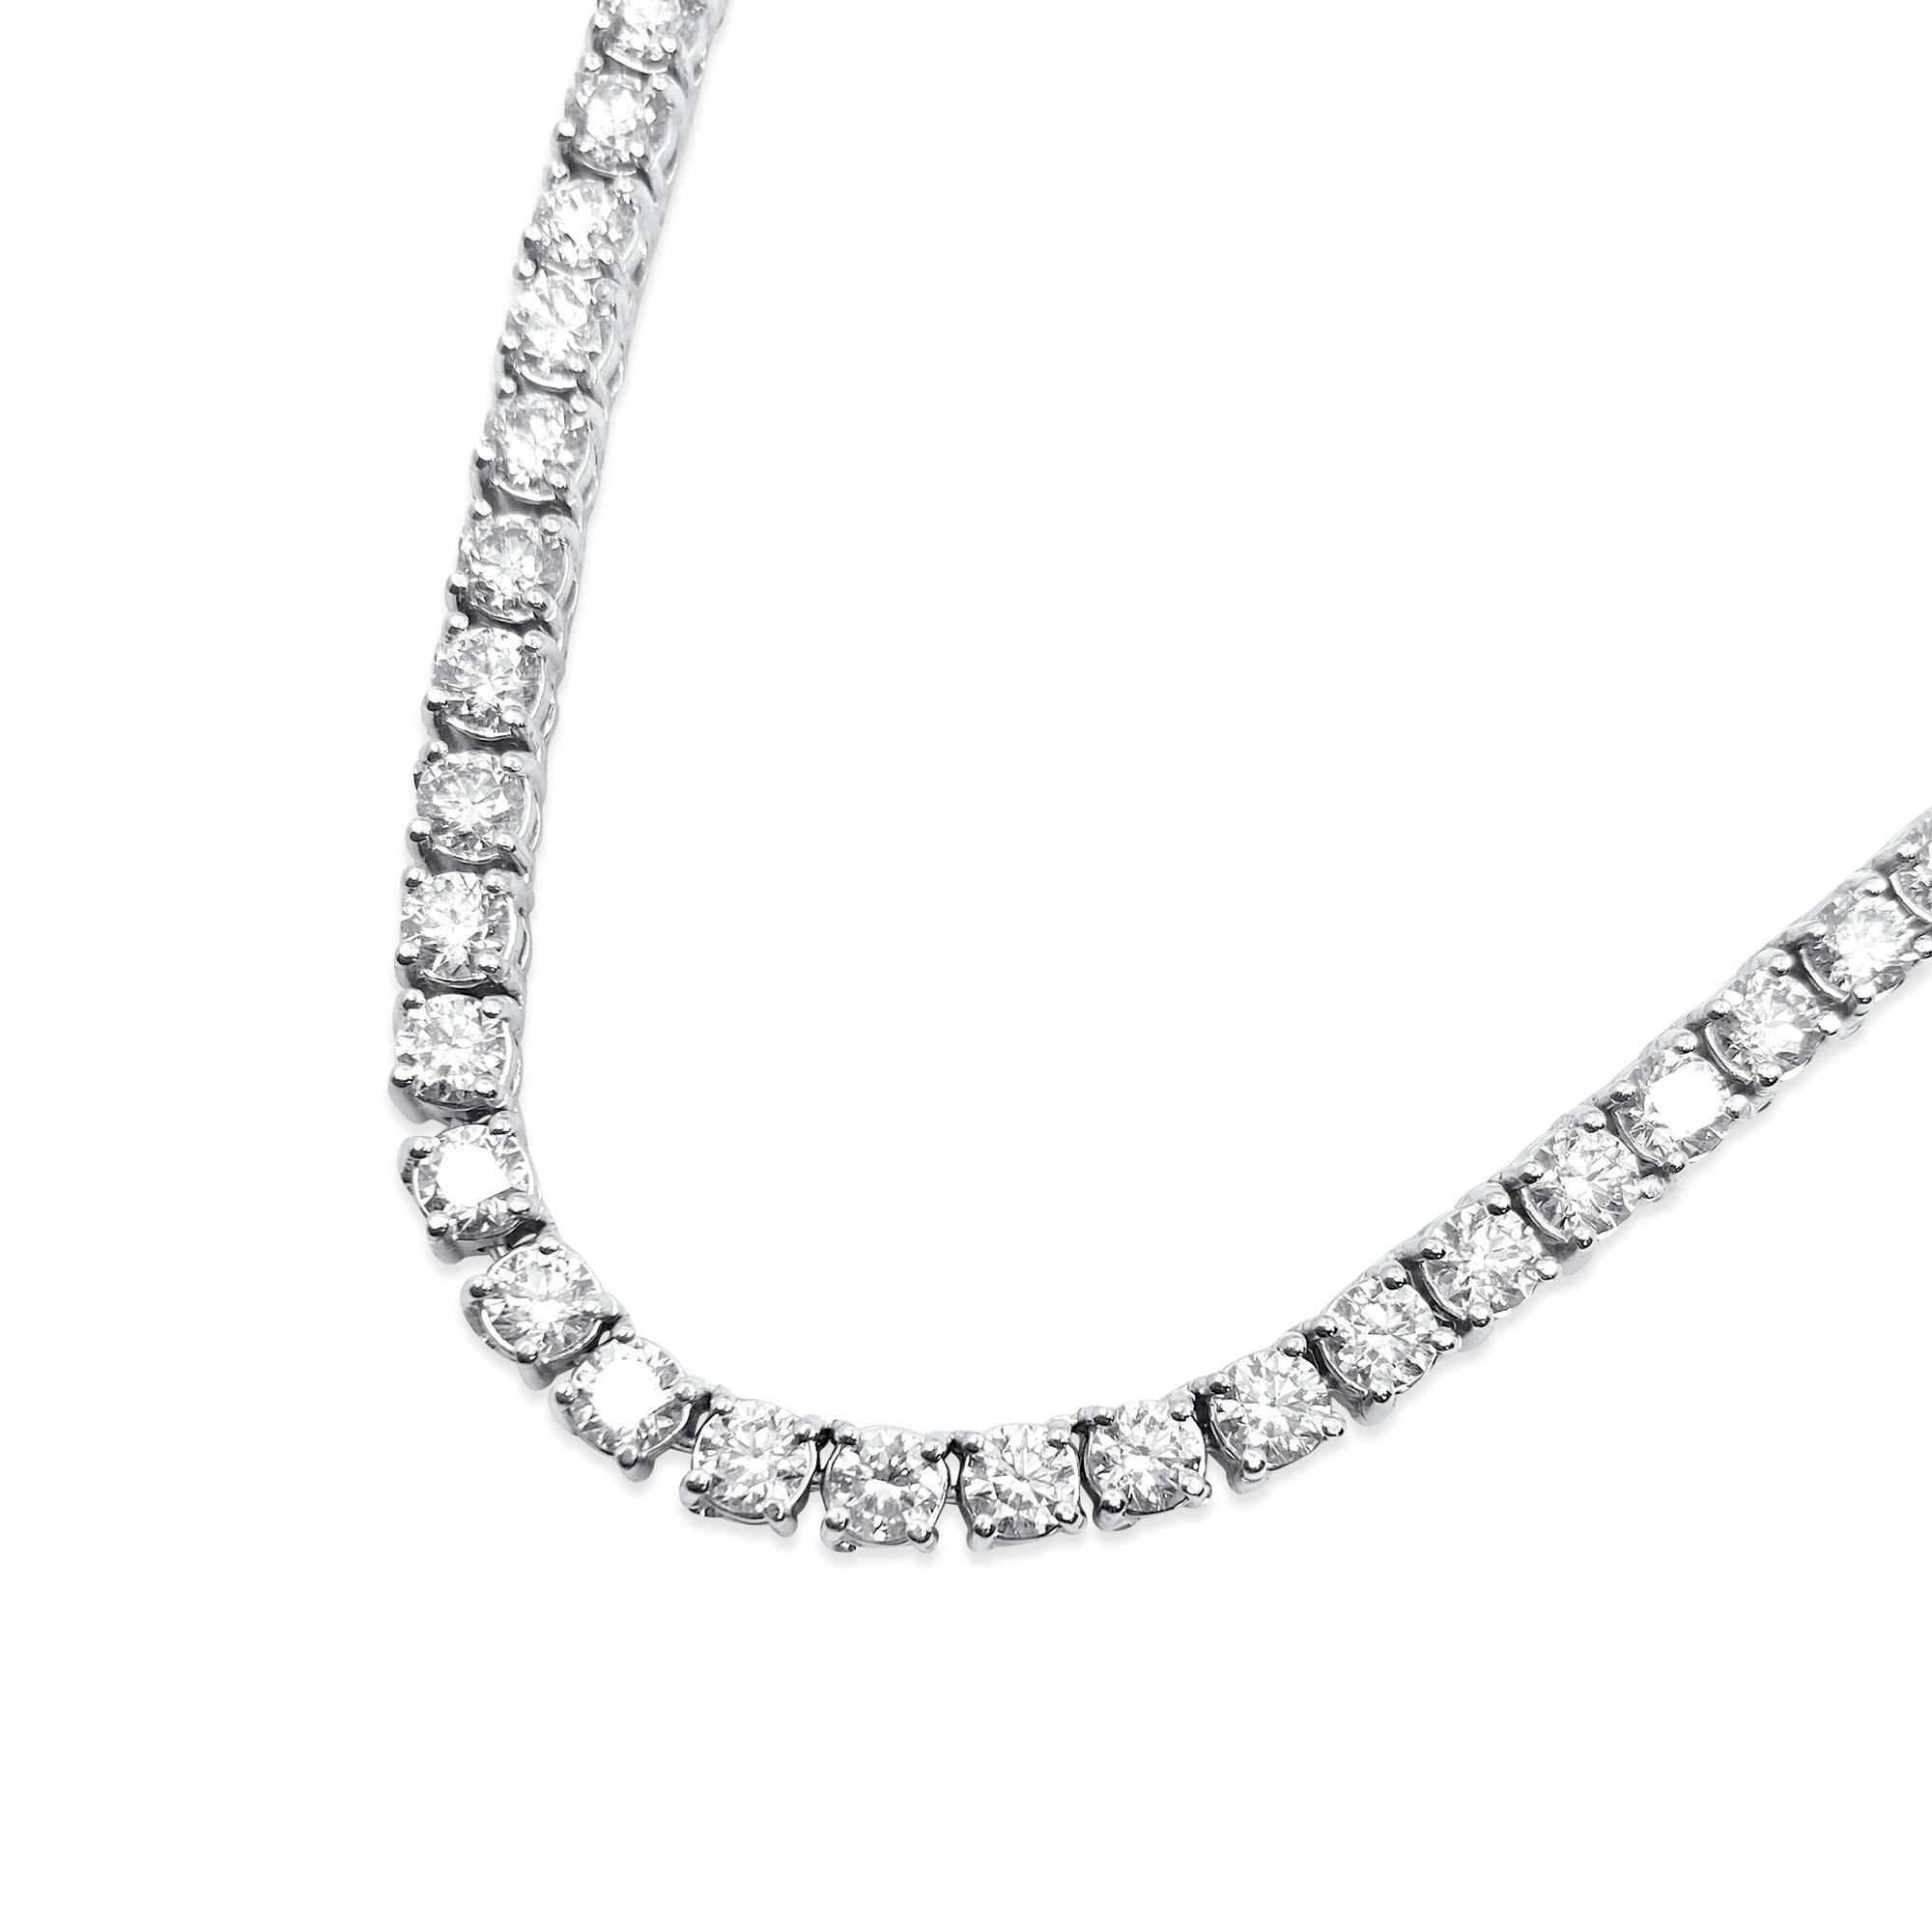 Ce collier est en or blanc 14 carats. Les diamants qui le composent pèsent 26 carats, ont une pureté très, très légère (VVS) et sont de couleur H. Ces diamants sont entièrement naturels et extraits de la terre. Elles sont taillées dans un style rond